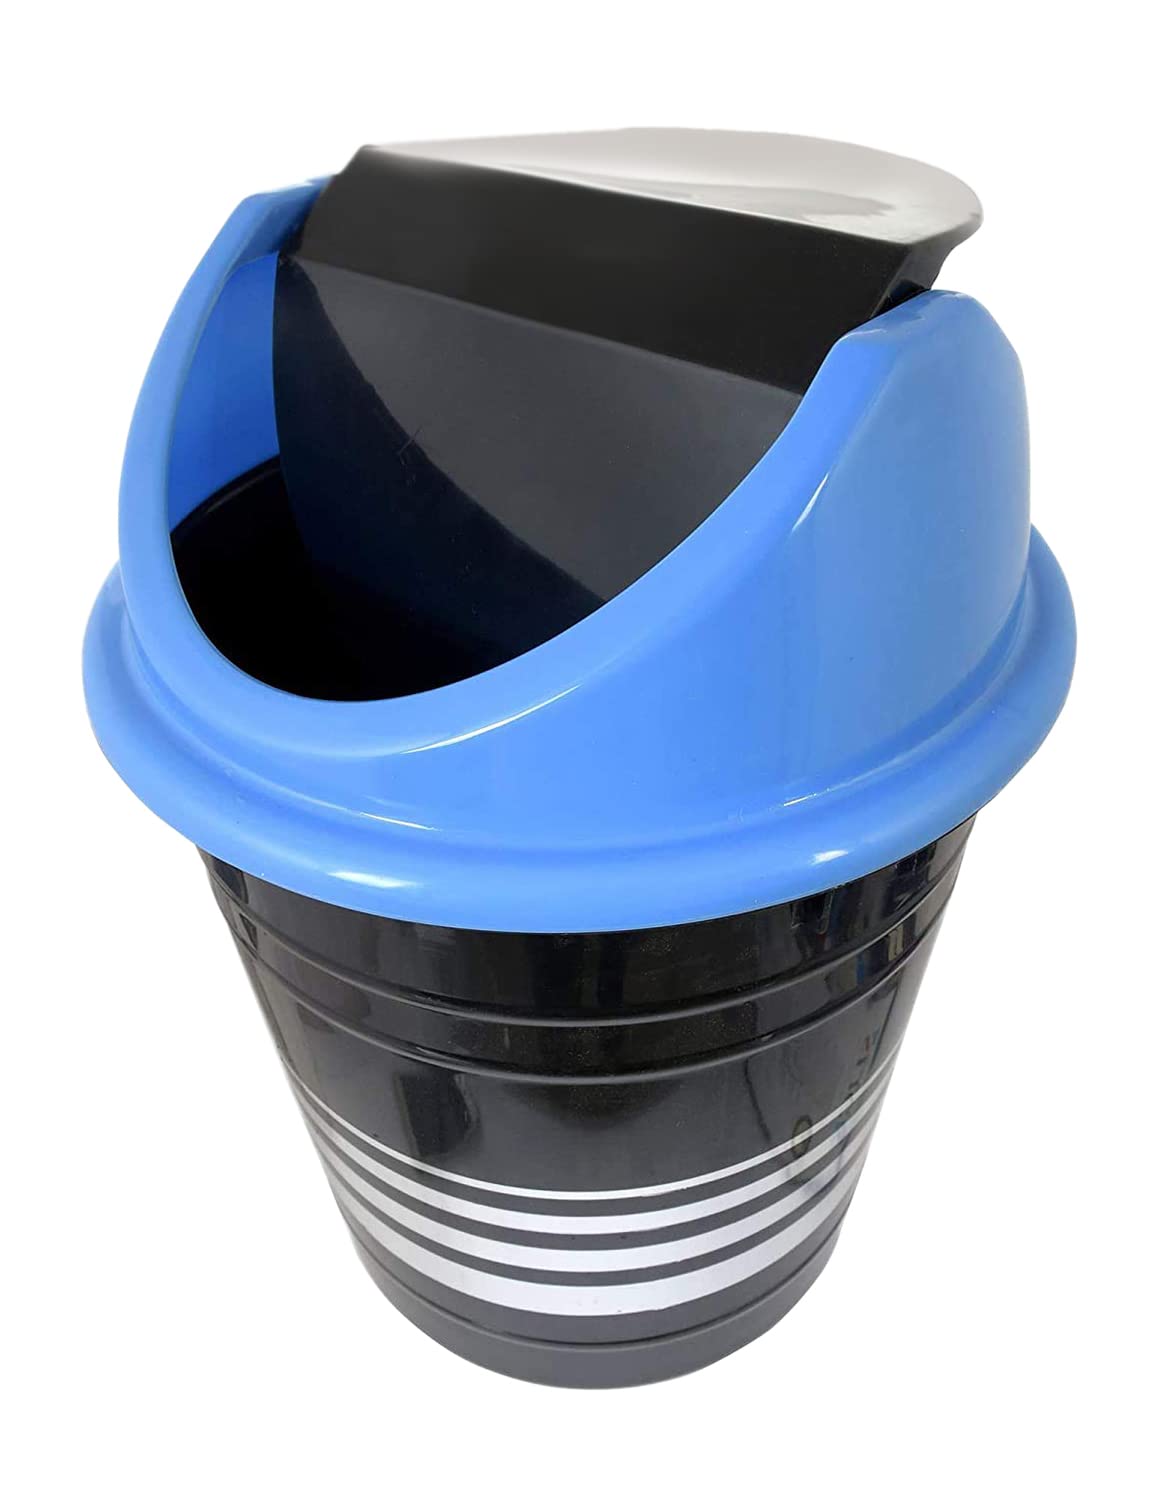 Kuber Industries Plastic DustbinWastebin With Swing Lid 10 Liter Black  Blue-47KM0887